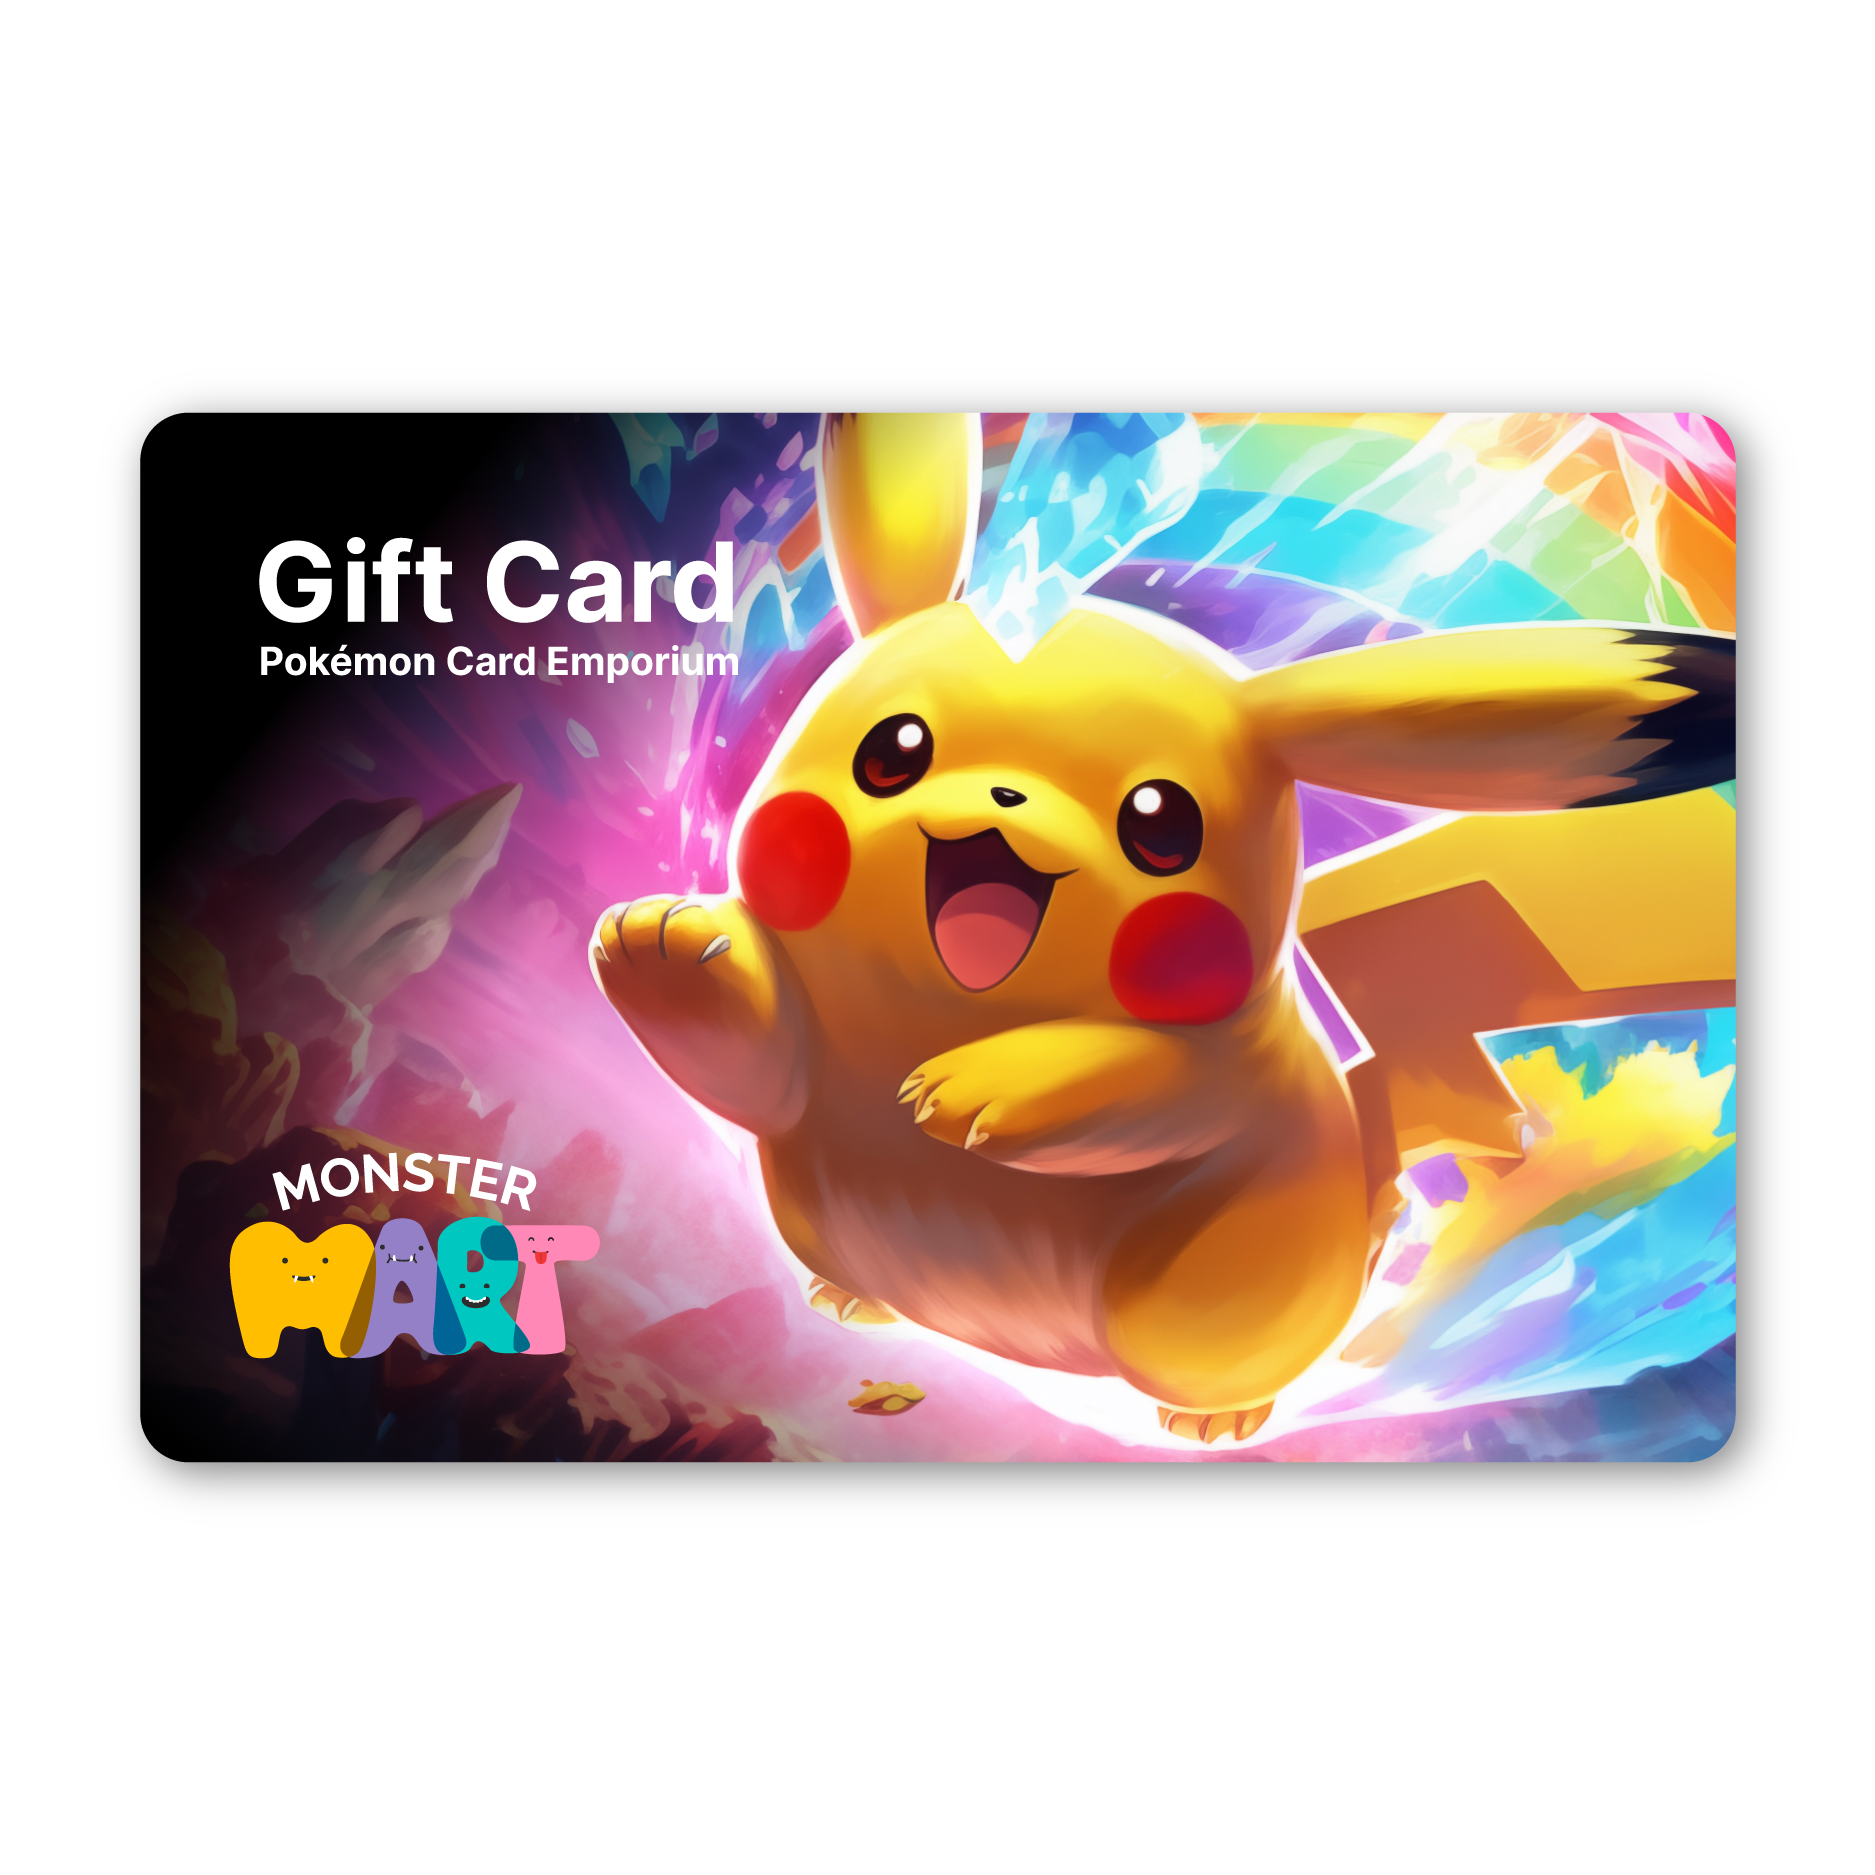 Buy Pokemon cards Australia - Monster Mart - Pokémon emporium gift card - Premium Digital Gift Card from Monster Mart - Pokémon Card Emporium - Shop now at Monster Mart - Pokémon Cards Australia. Gift Card